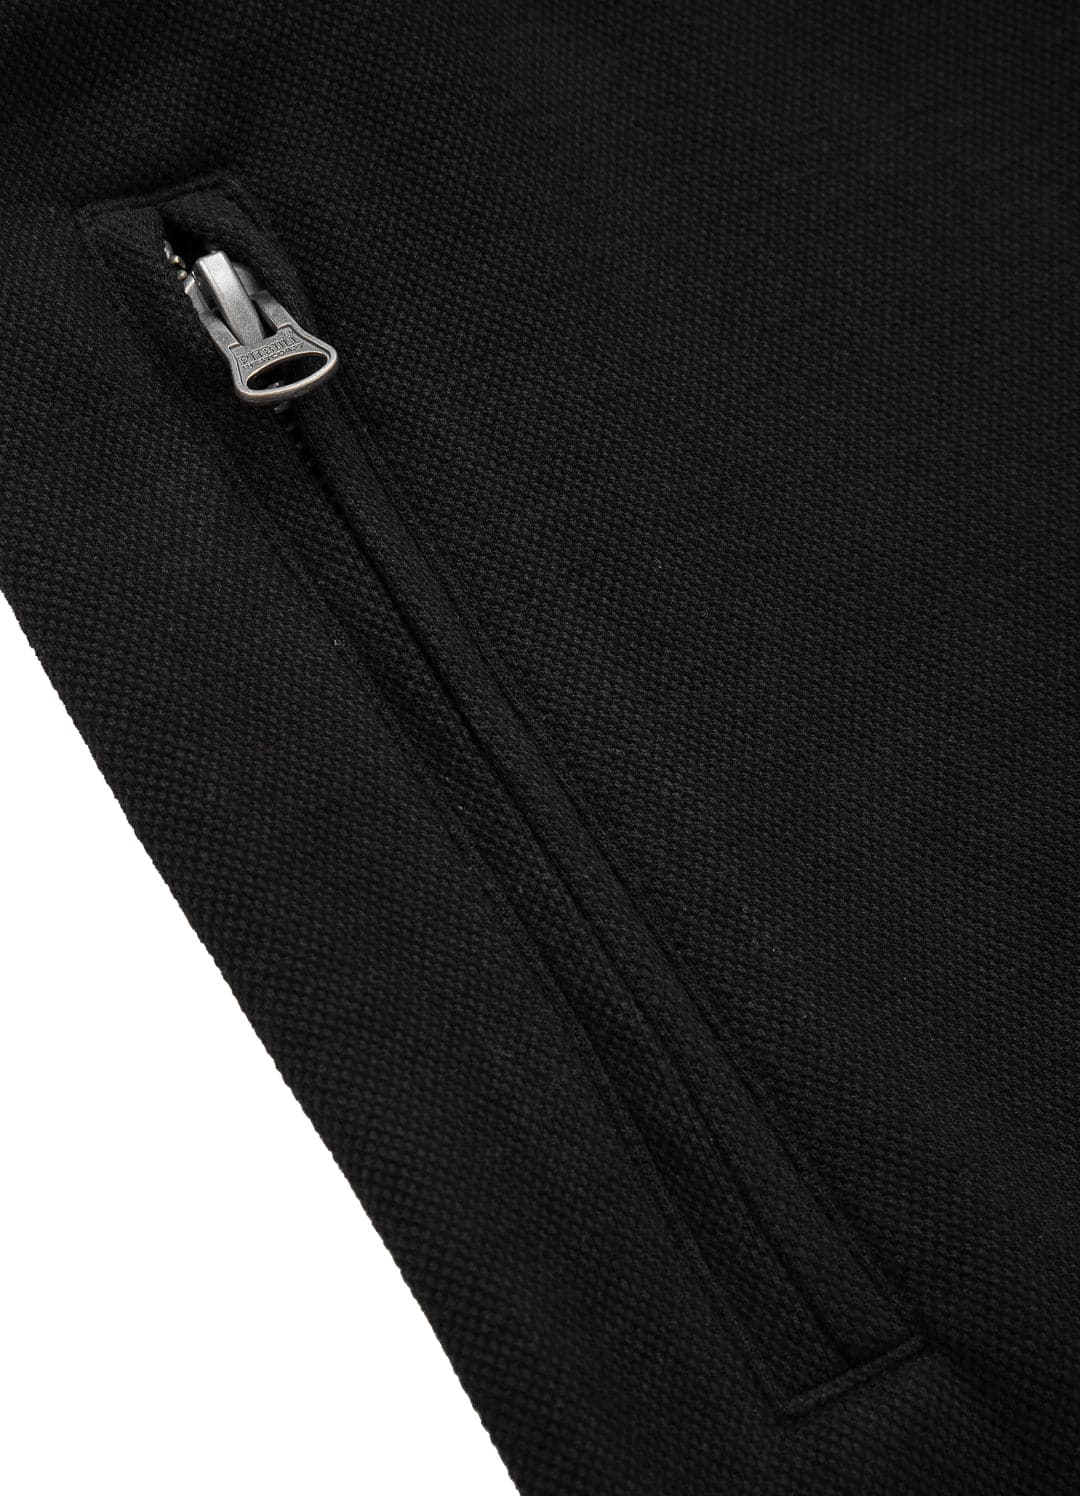 Spodnie dresowe Premium Pique NEW LOGO Czarne - Pitbull West Coast International Store 